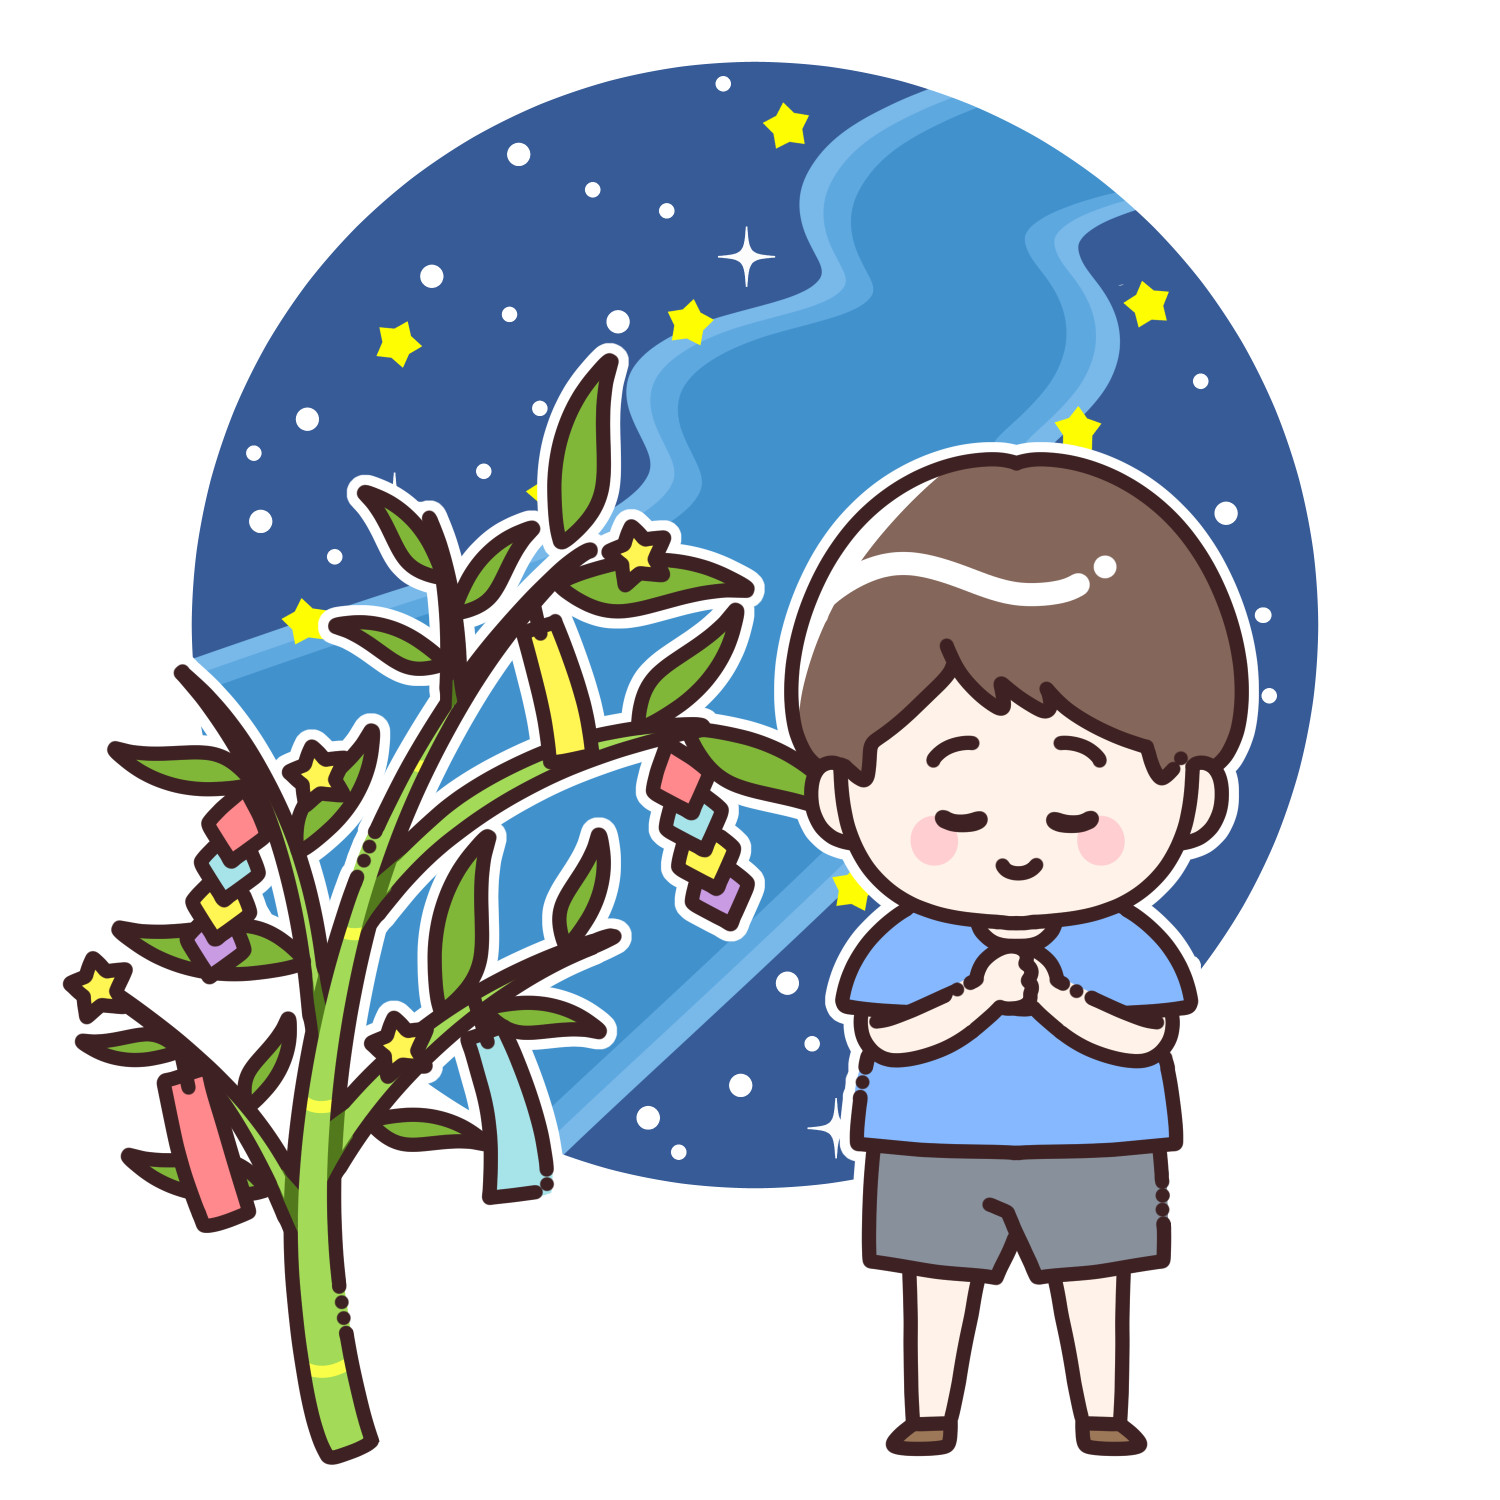 七夕の天の川と笹の葉に願い事をする男の子のイラスト